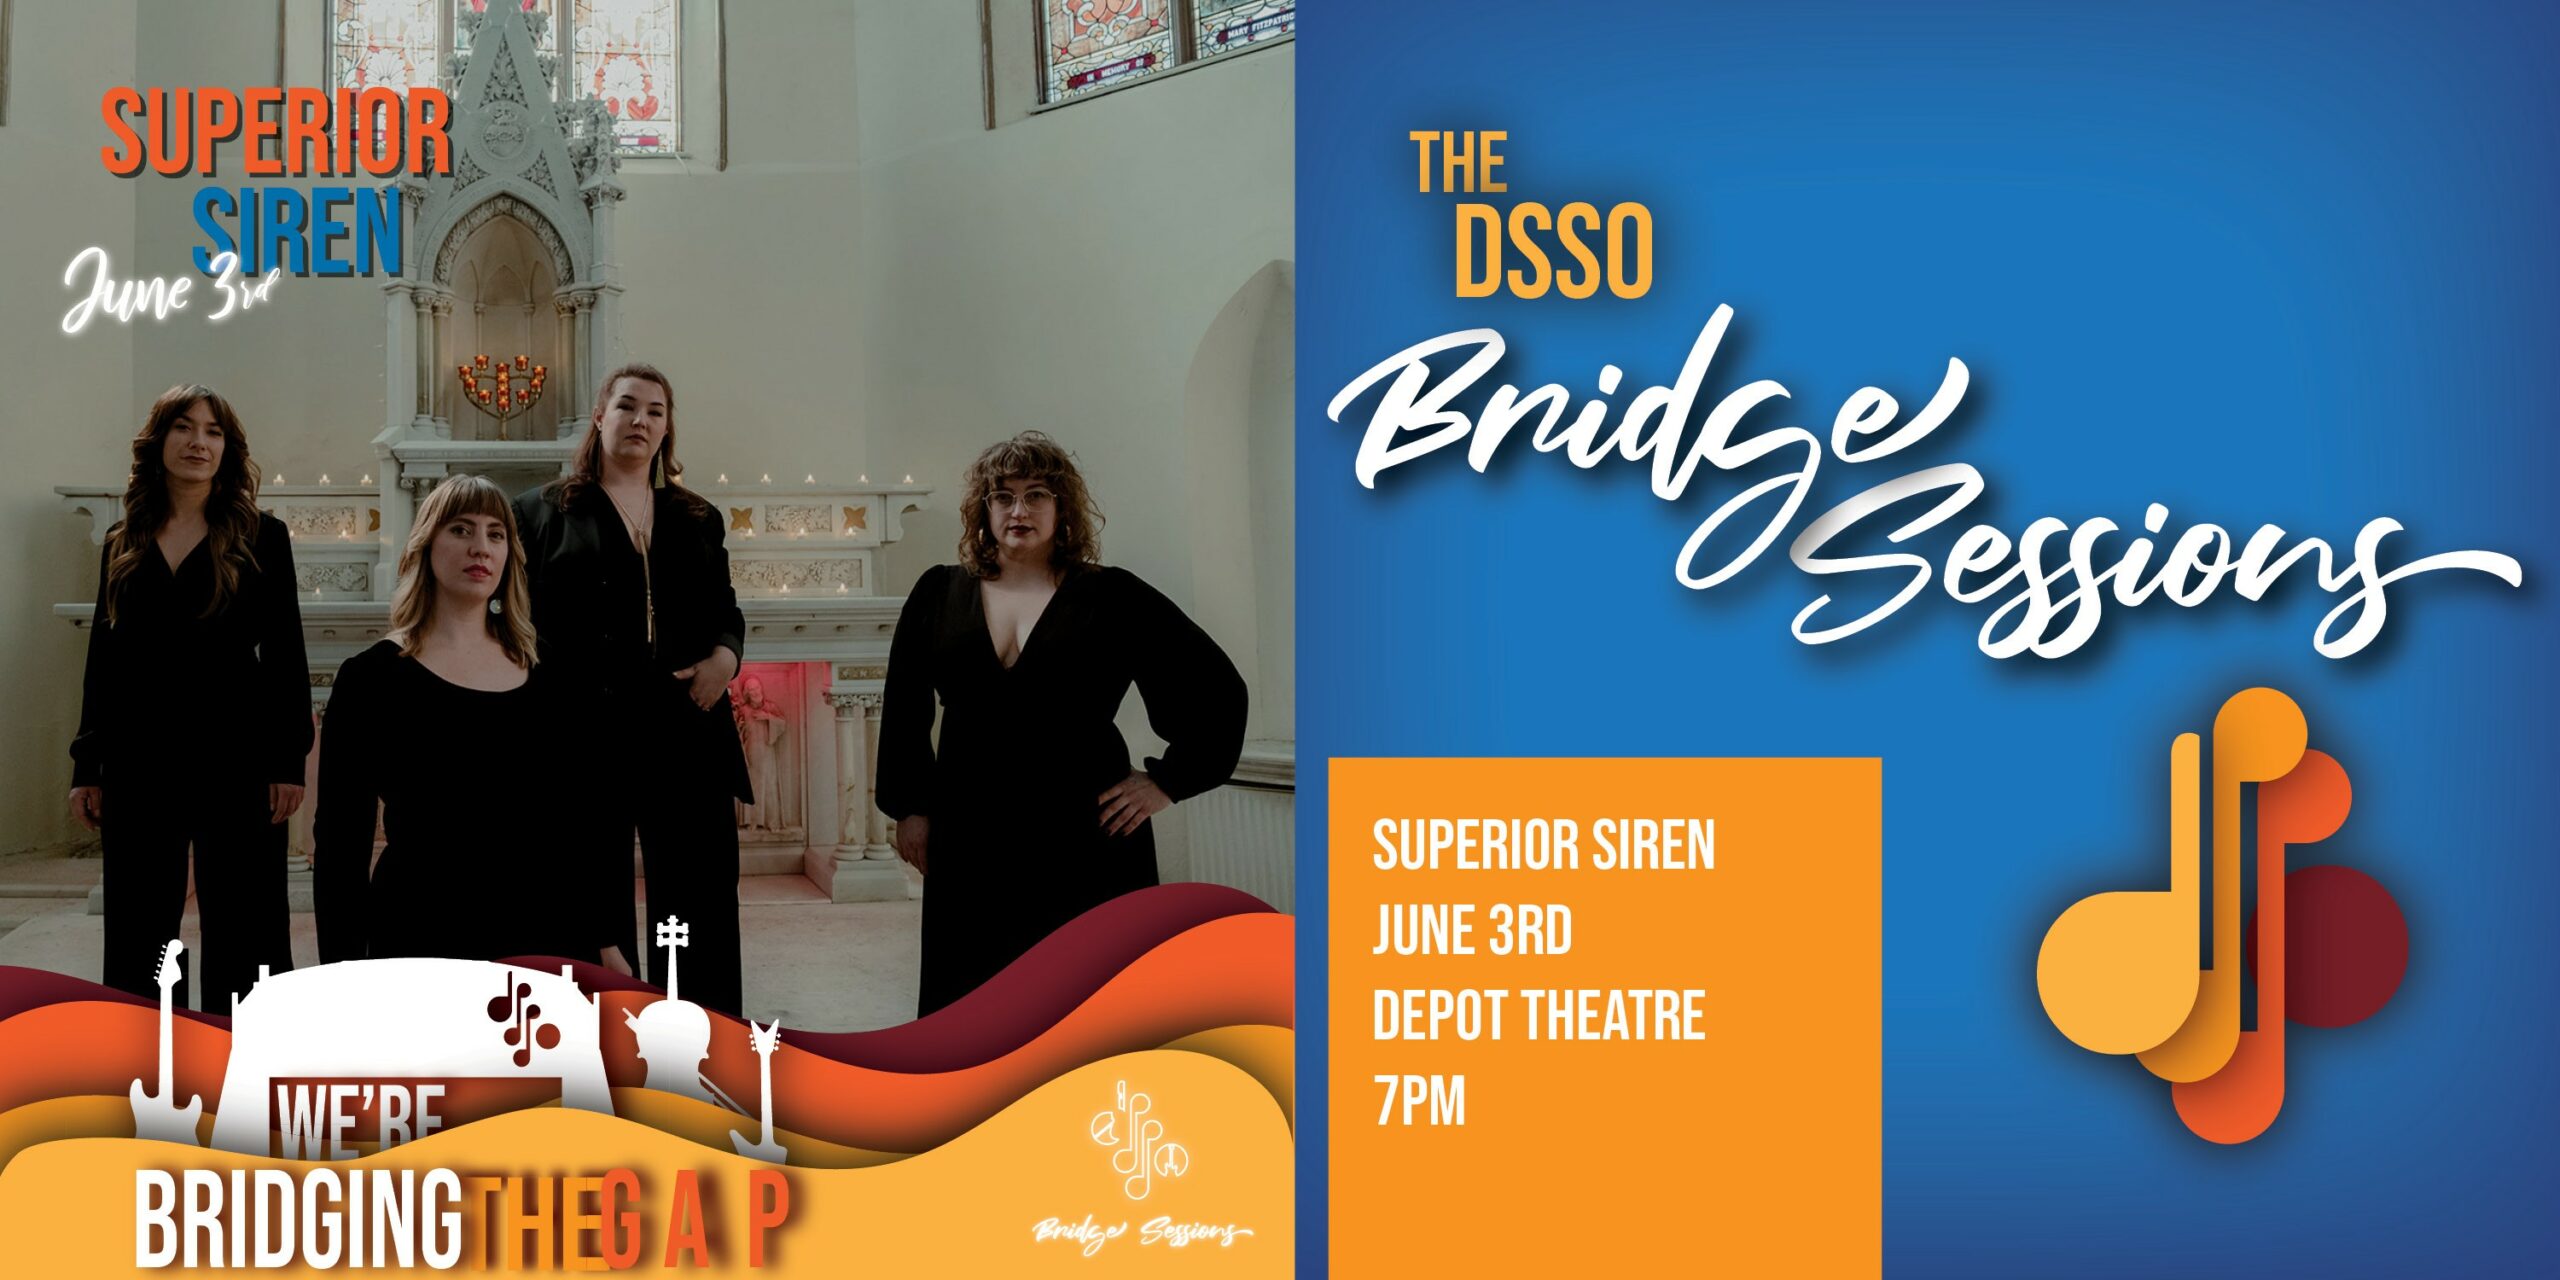 The DSSO Bridge Sessions: Superior Siren